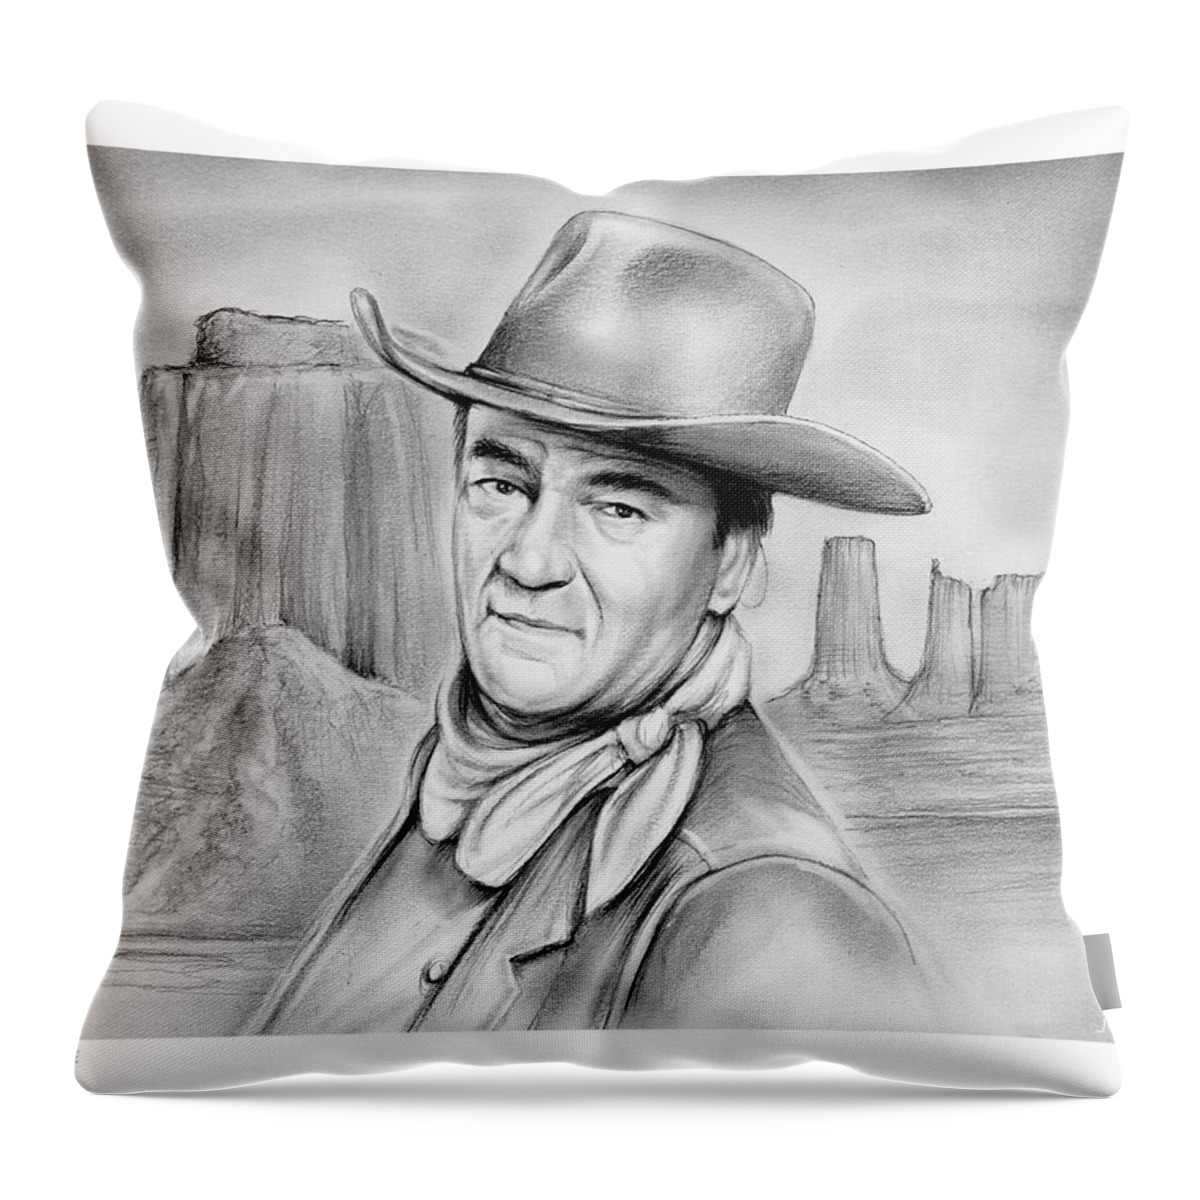 John Wayne Throw Pillow featuring the drawing John Wayne 07oct18 by Greg Joens